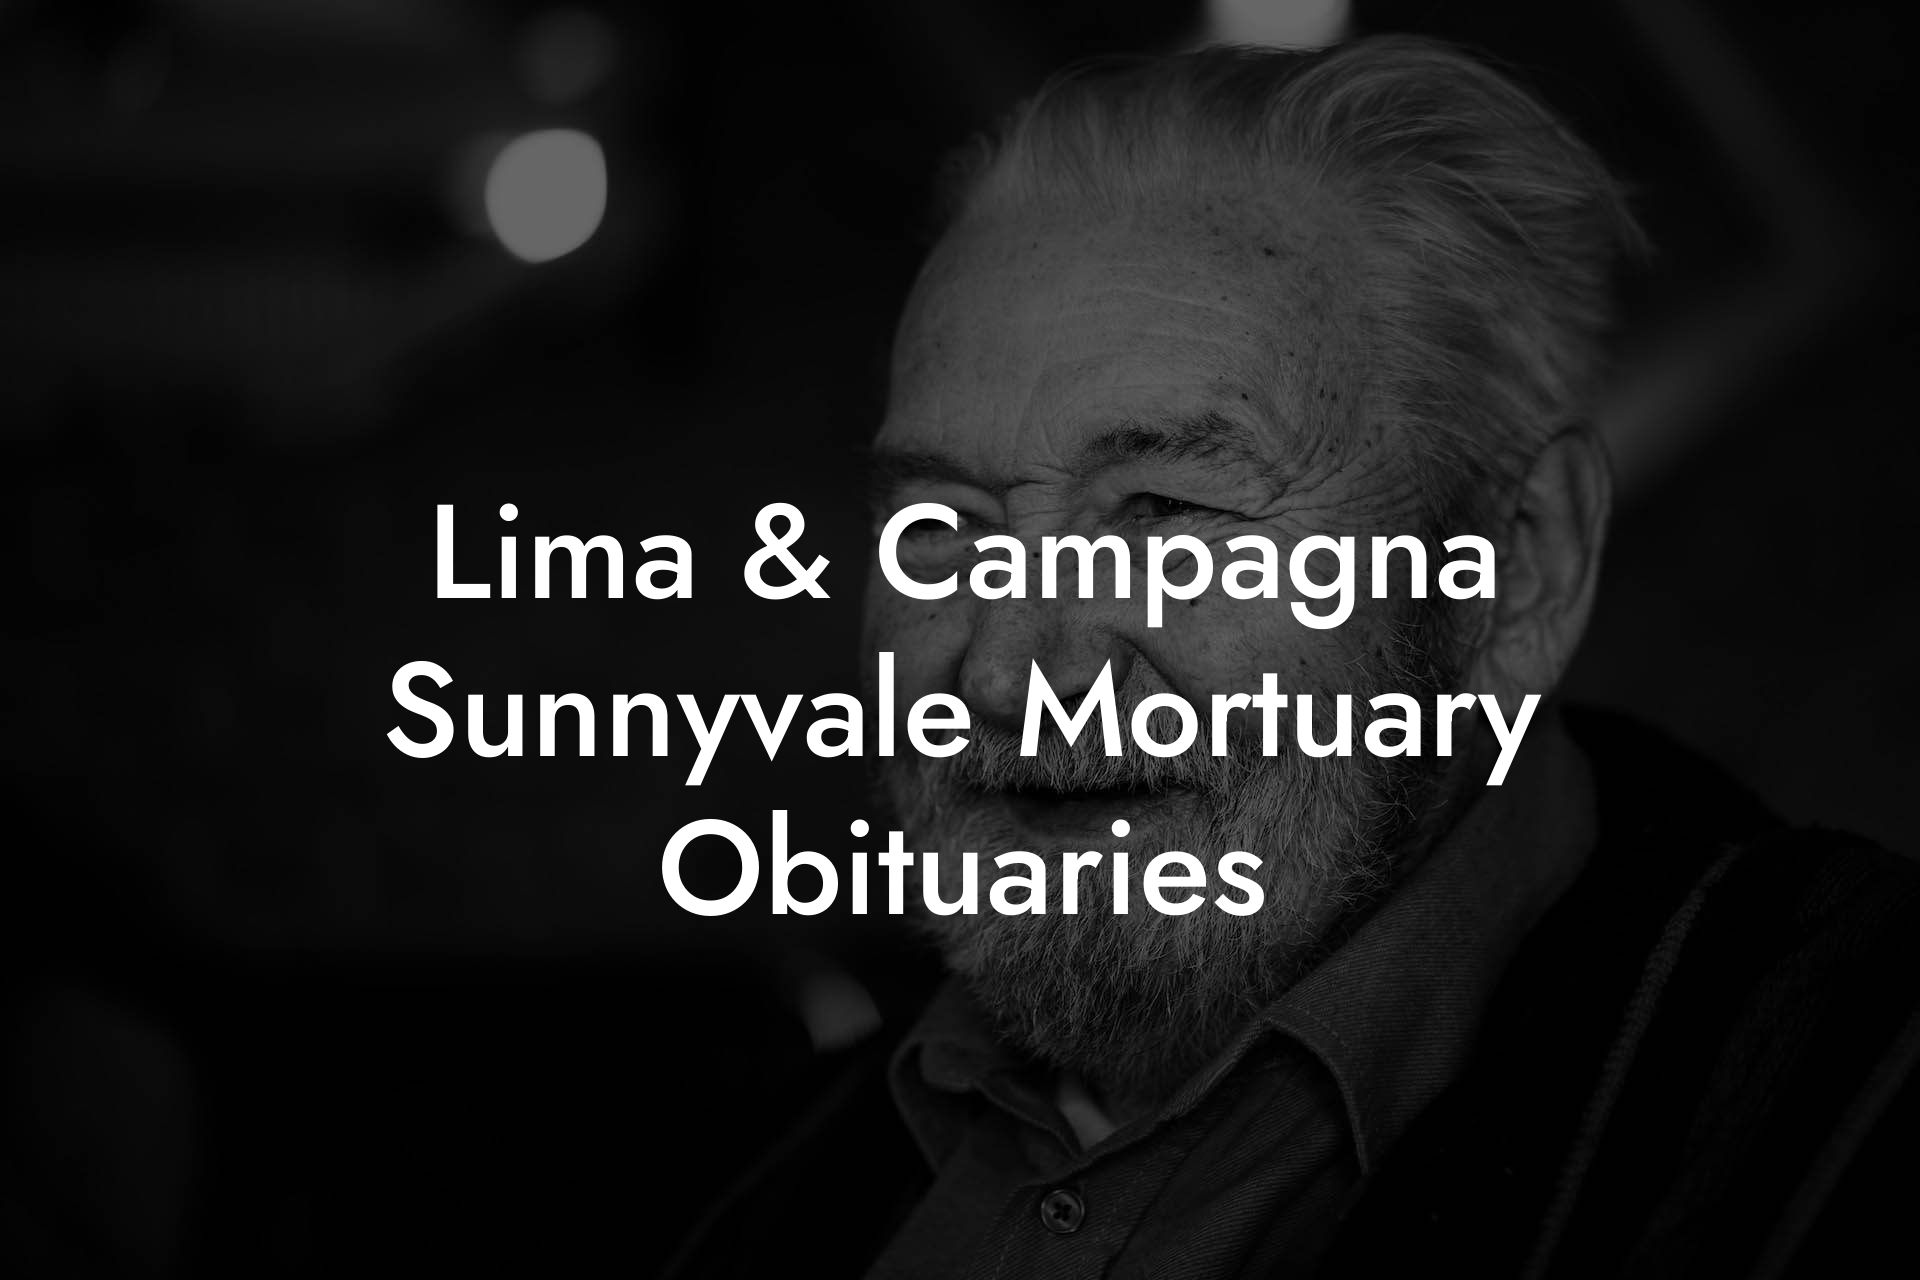 Lima & Campagna Sunnyvale Mortuary Obituaries